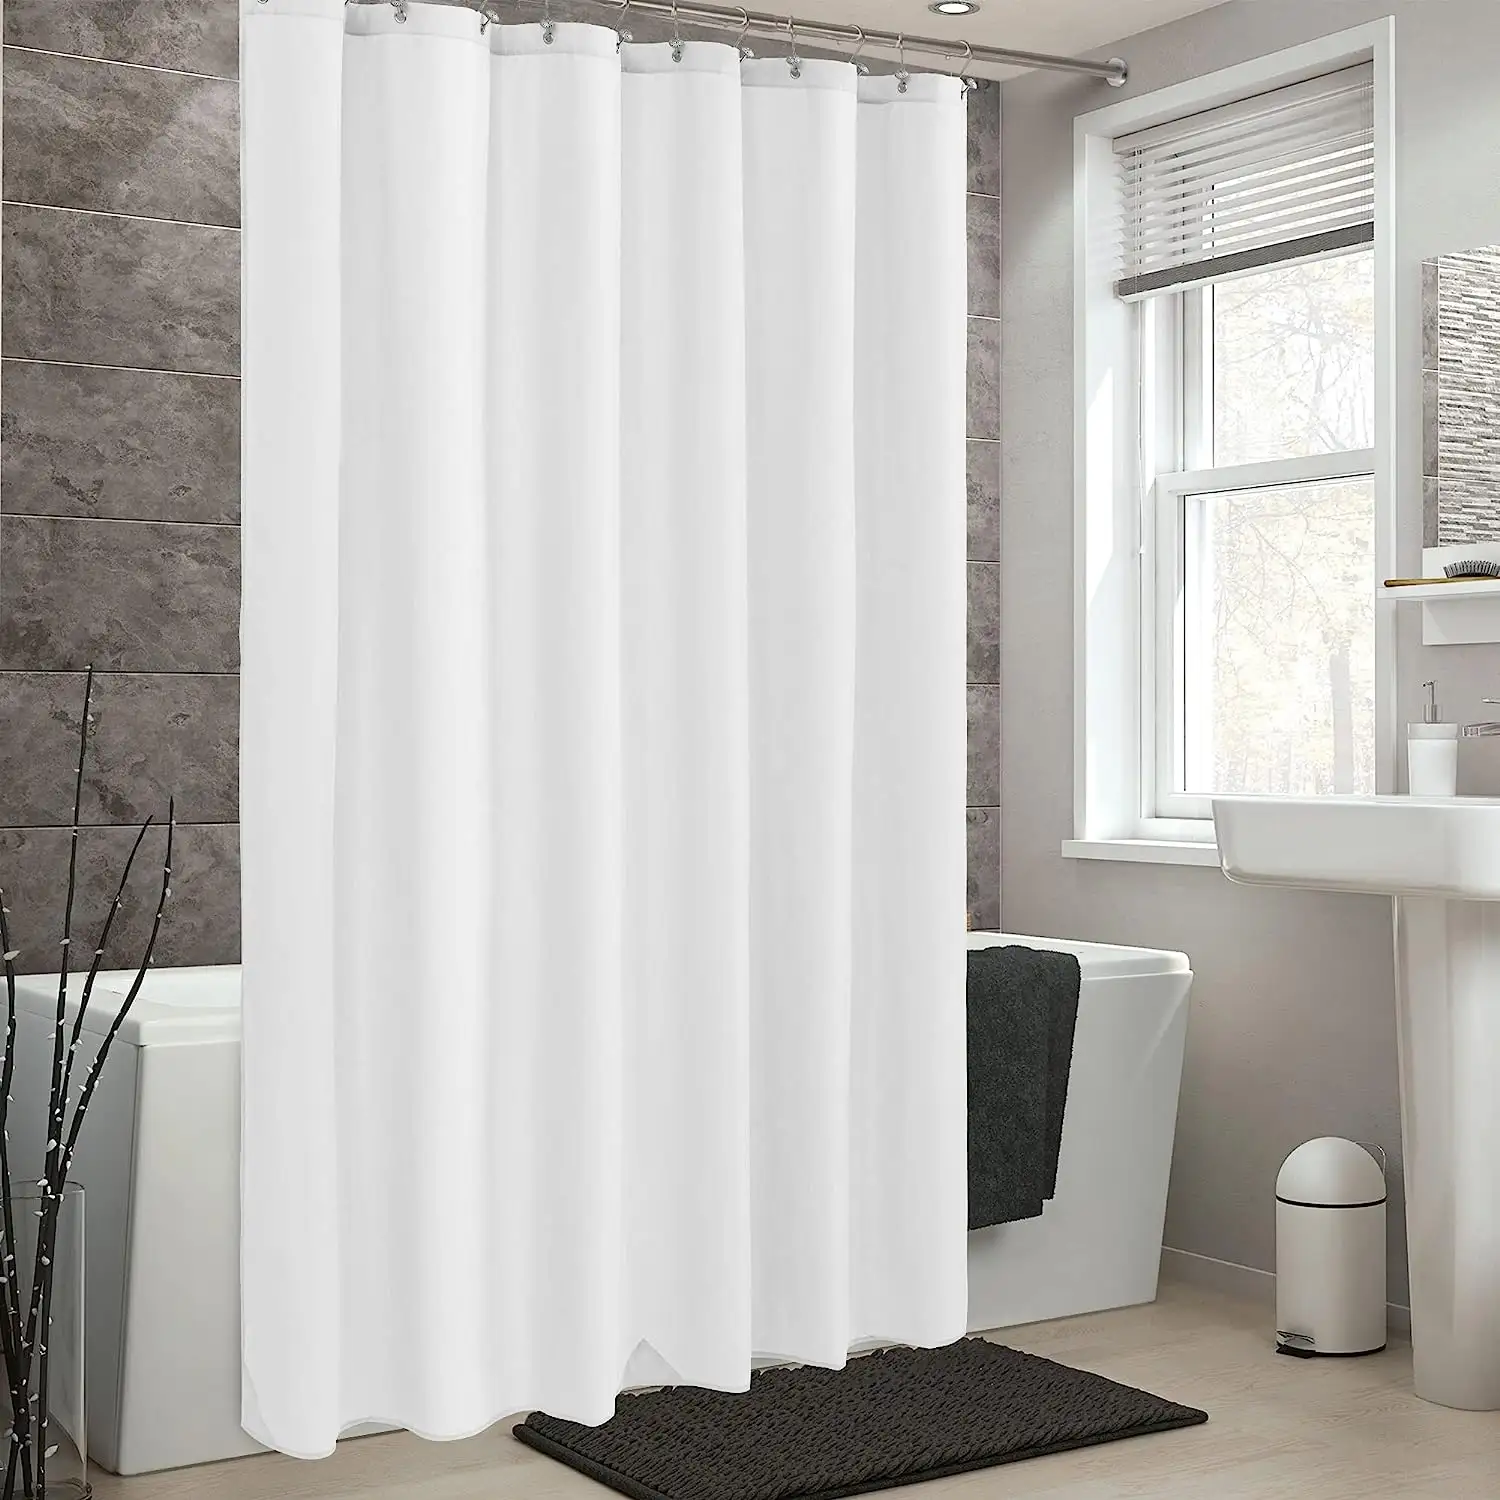 Su geçirmez beyaz Polyester duş perdesi yumuşak otel astar işık ve makinede yıkanabilir bez duş perdesi 72x72